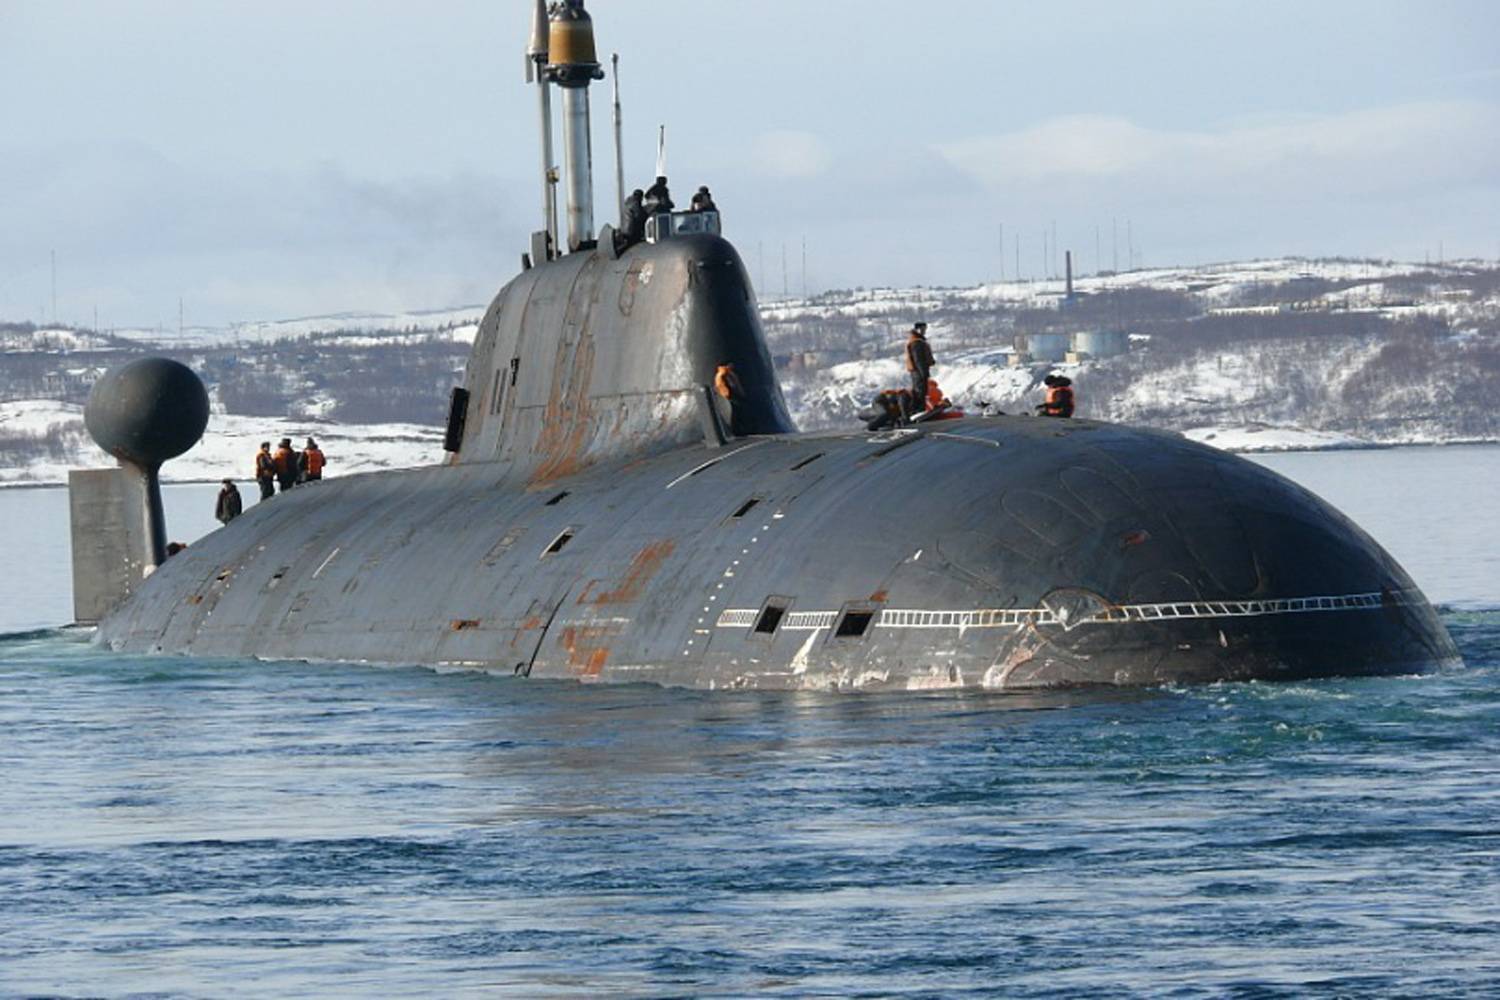 原创重点打造猎豹号核潜艇,拥有显著降噪效果,专用于对付航母!